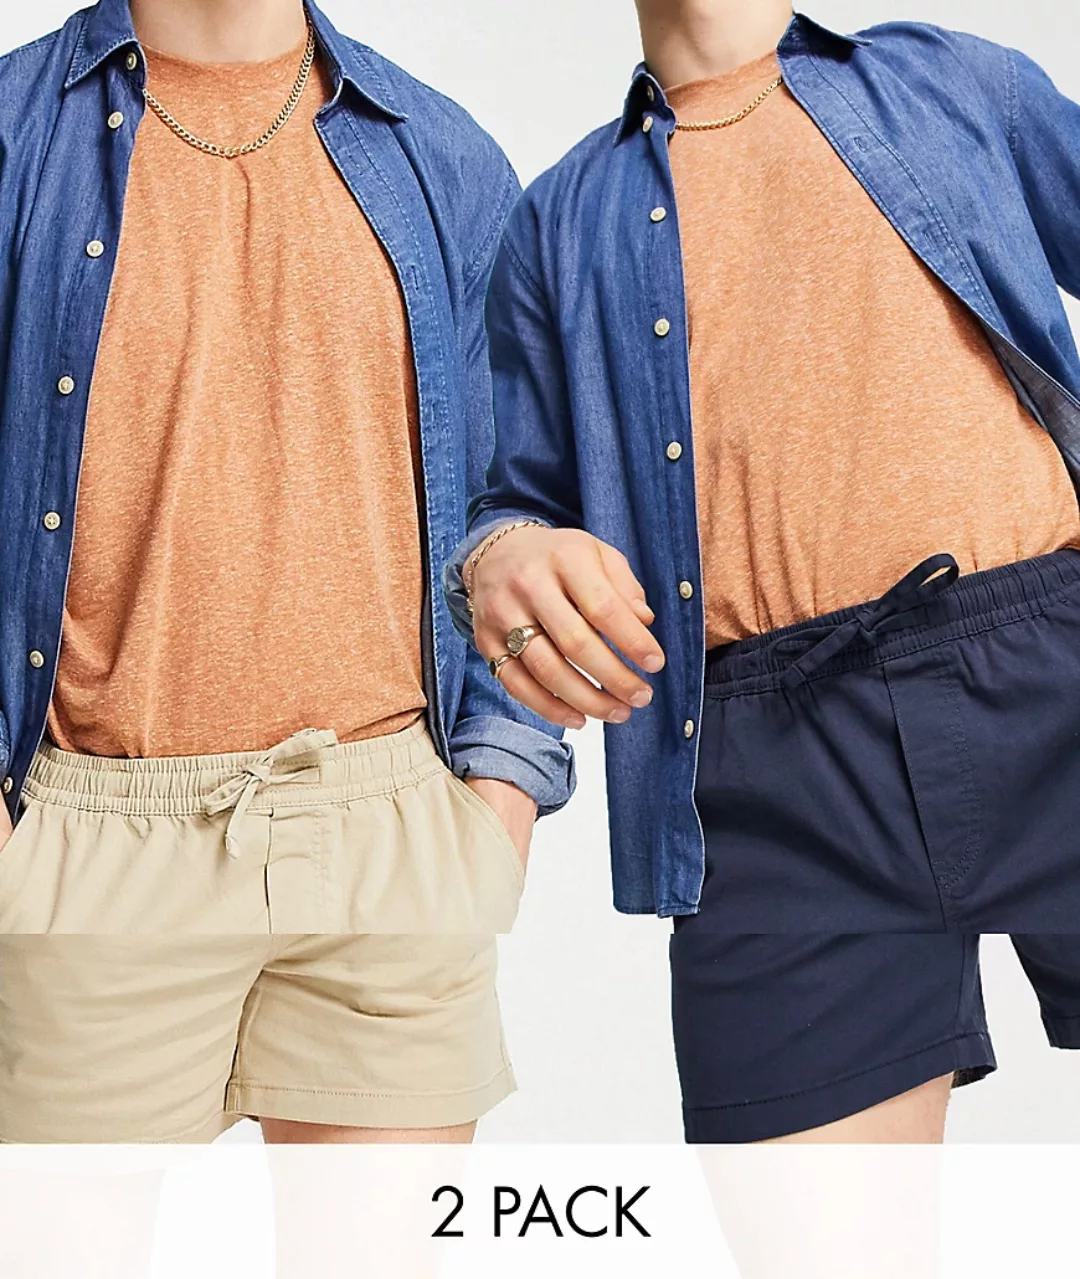 Jack & Jones Intelligence – Shorts mit Kordelzug in Marineblau und Beige im günstig online kaufen